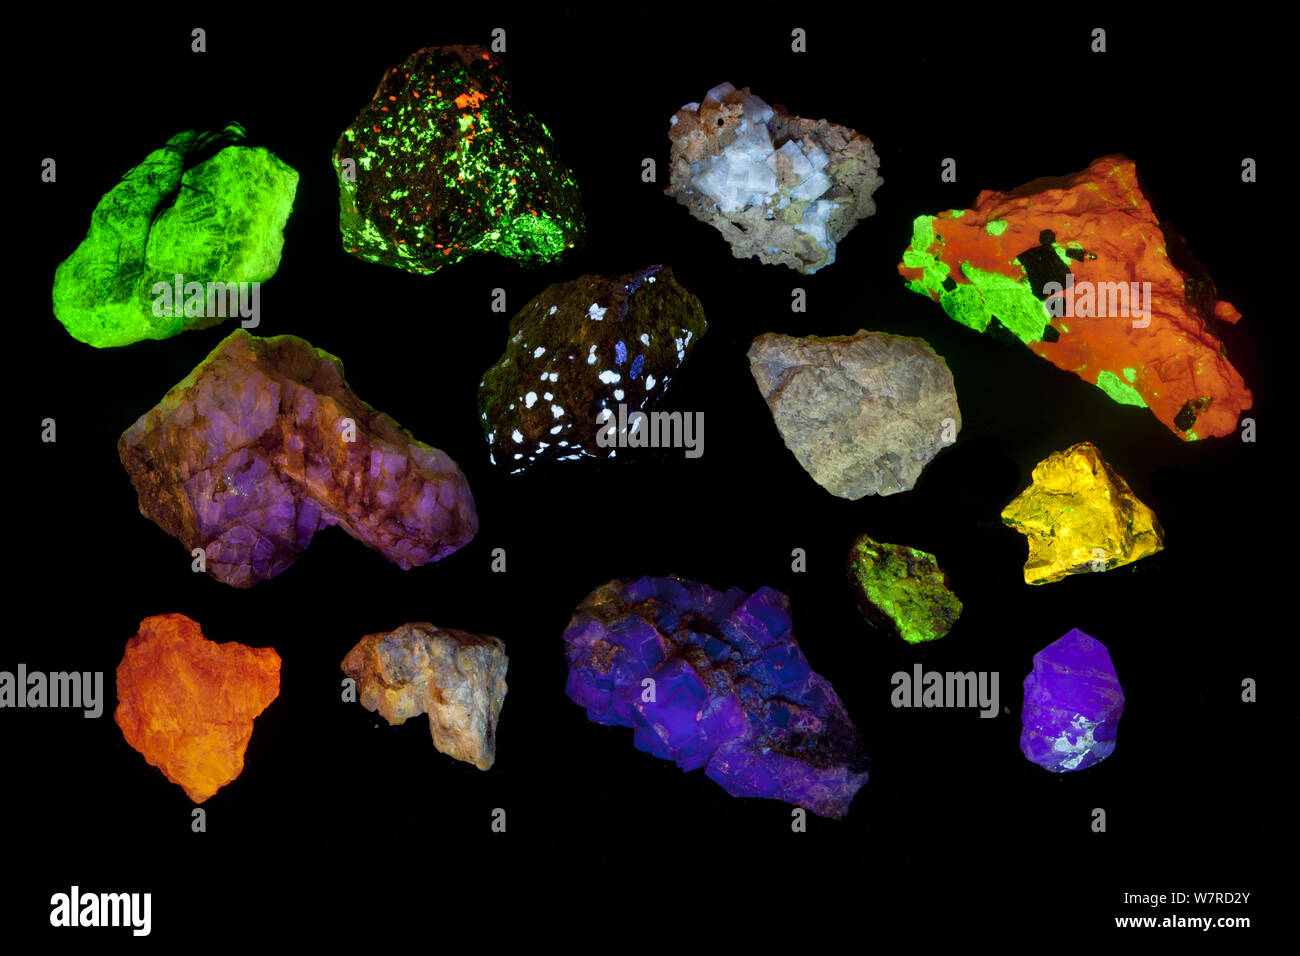 Vari minerali fluorescenti, sotto luce UV comprese, Willemite, aragonite, Fluorite e zircone. Vedere immagine 1434814 per le identificazioni specifiche e il paese di origine. Foto Stock